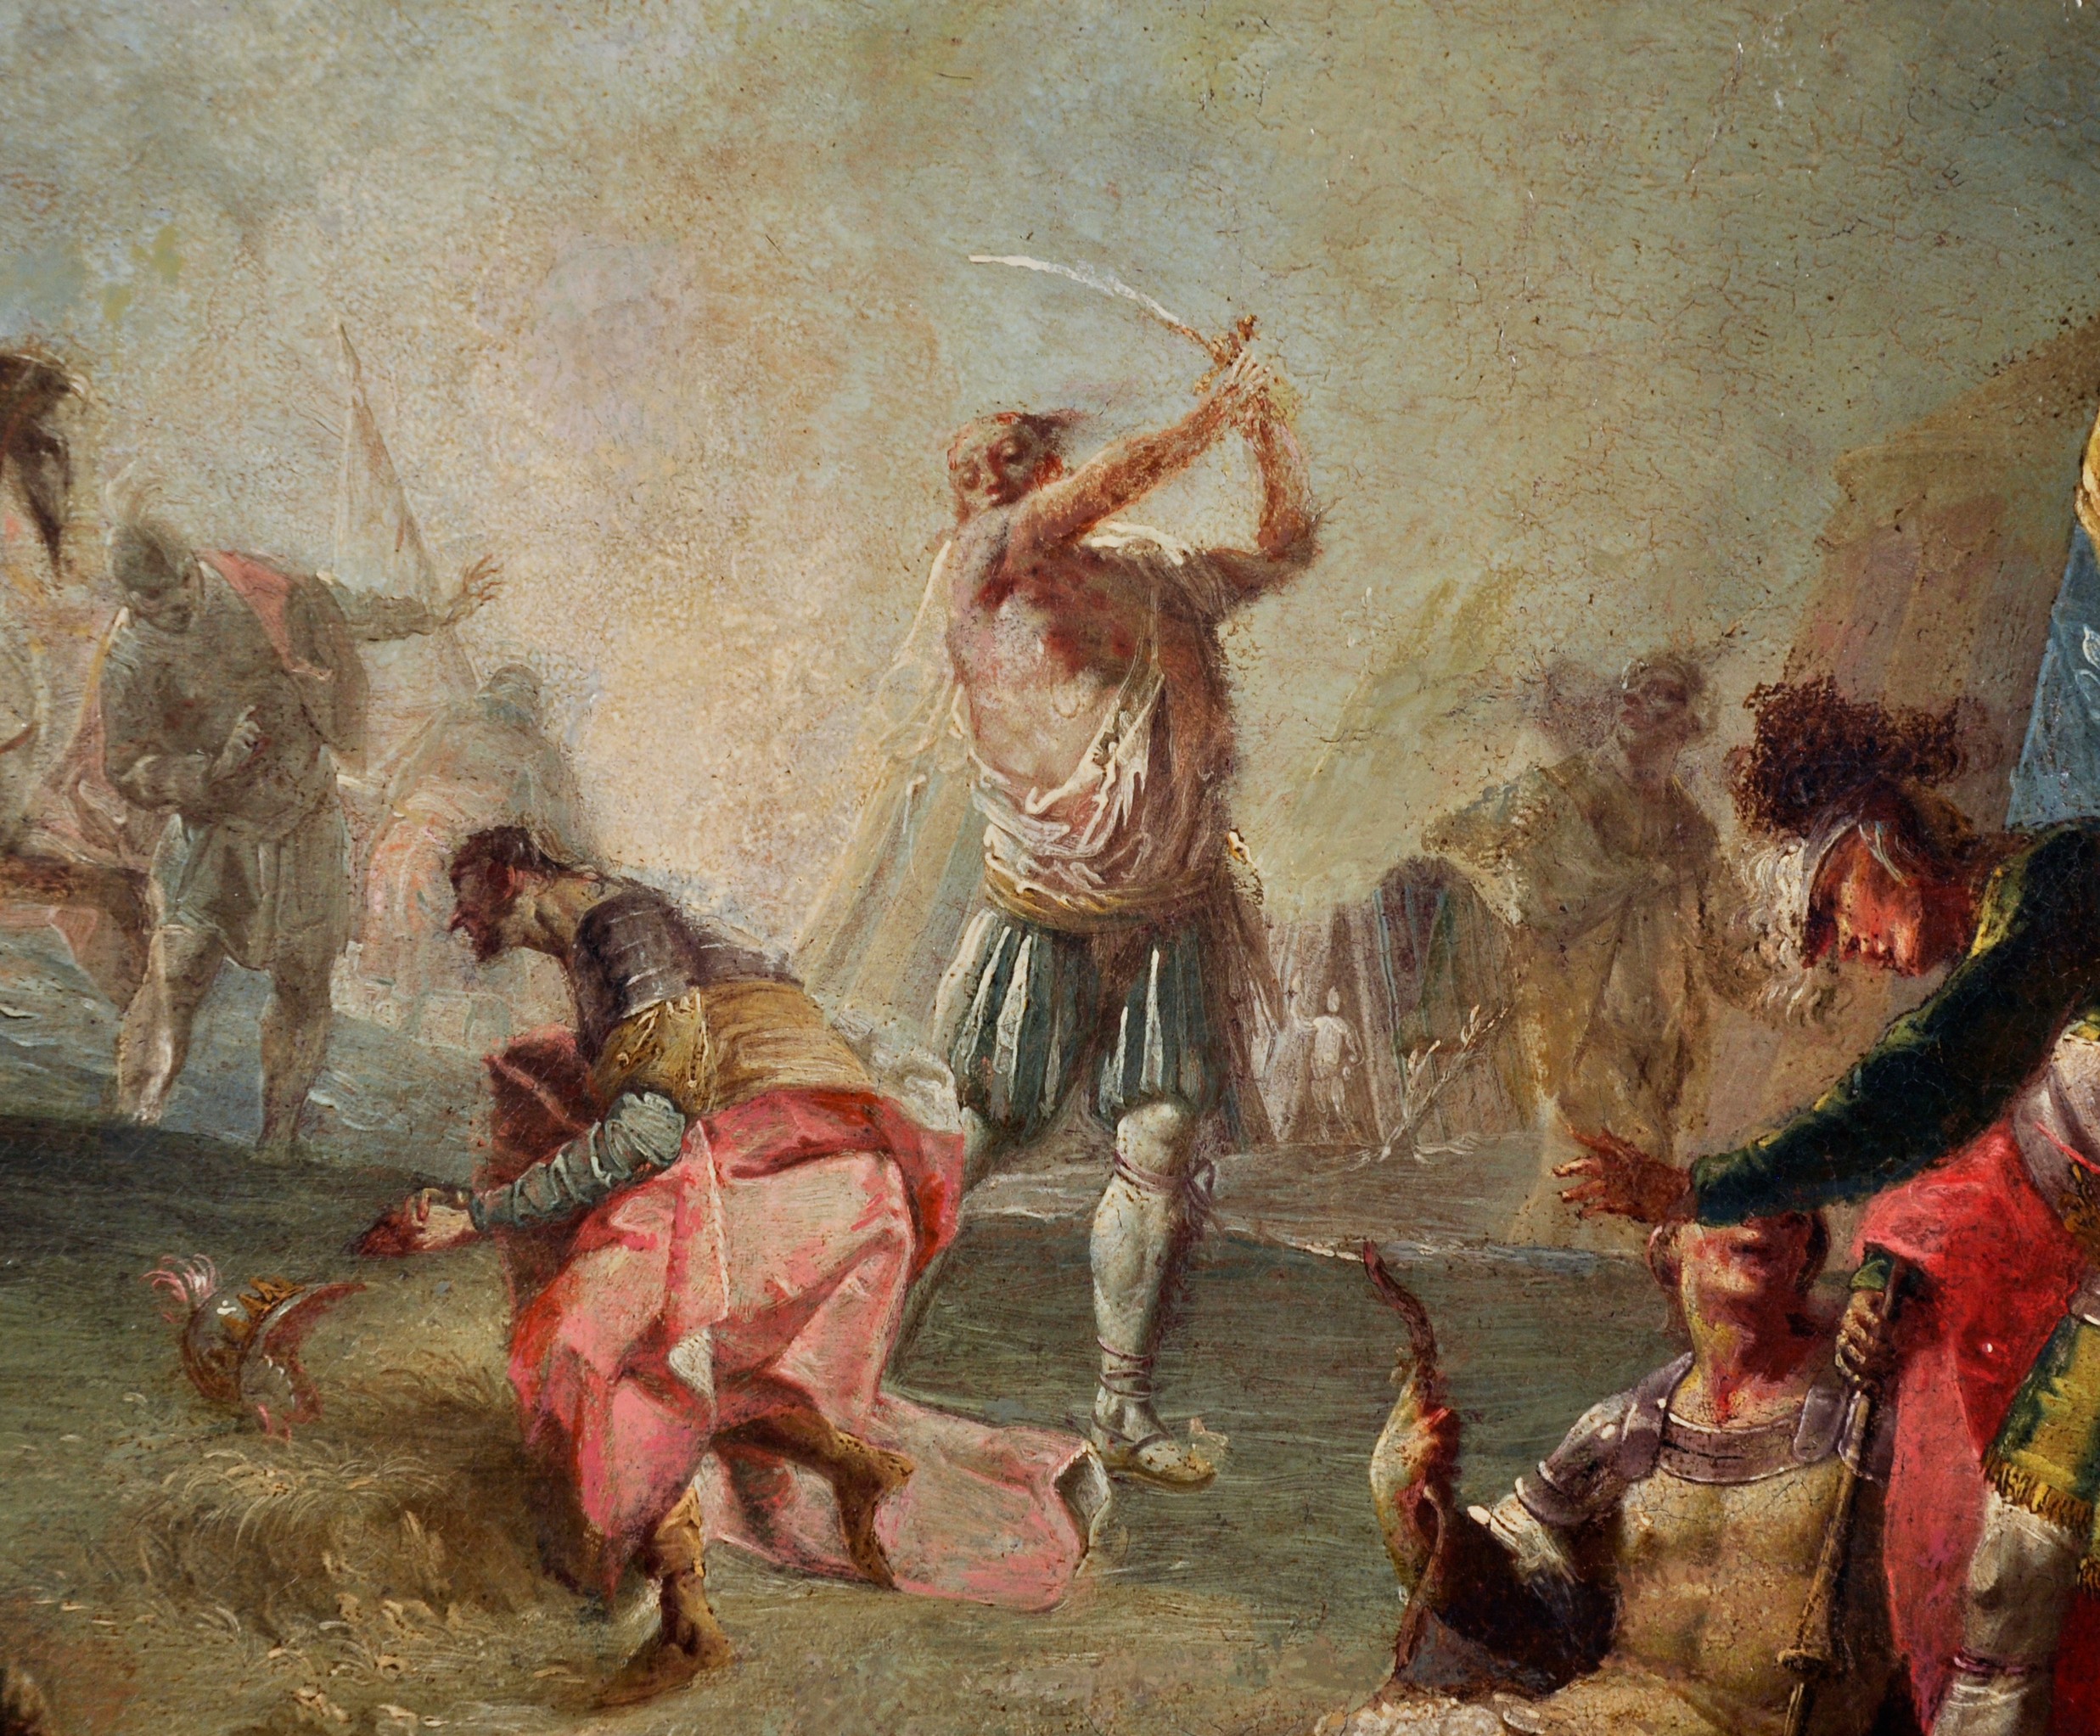 Early 18th Century Italian School. A Battle Scene, Oil on Canvas, Unframed, 15" x 21" (38.1 x 53. - Image 5 of 7